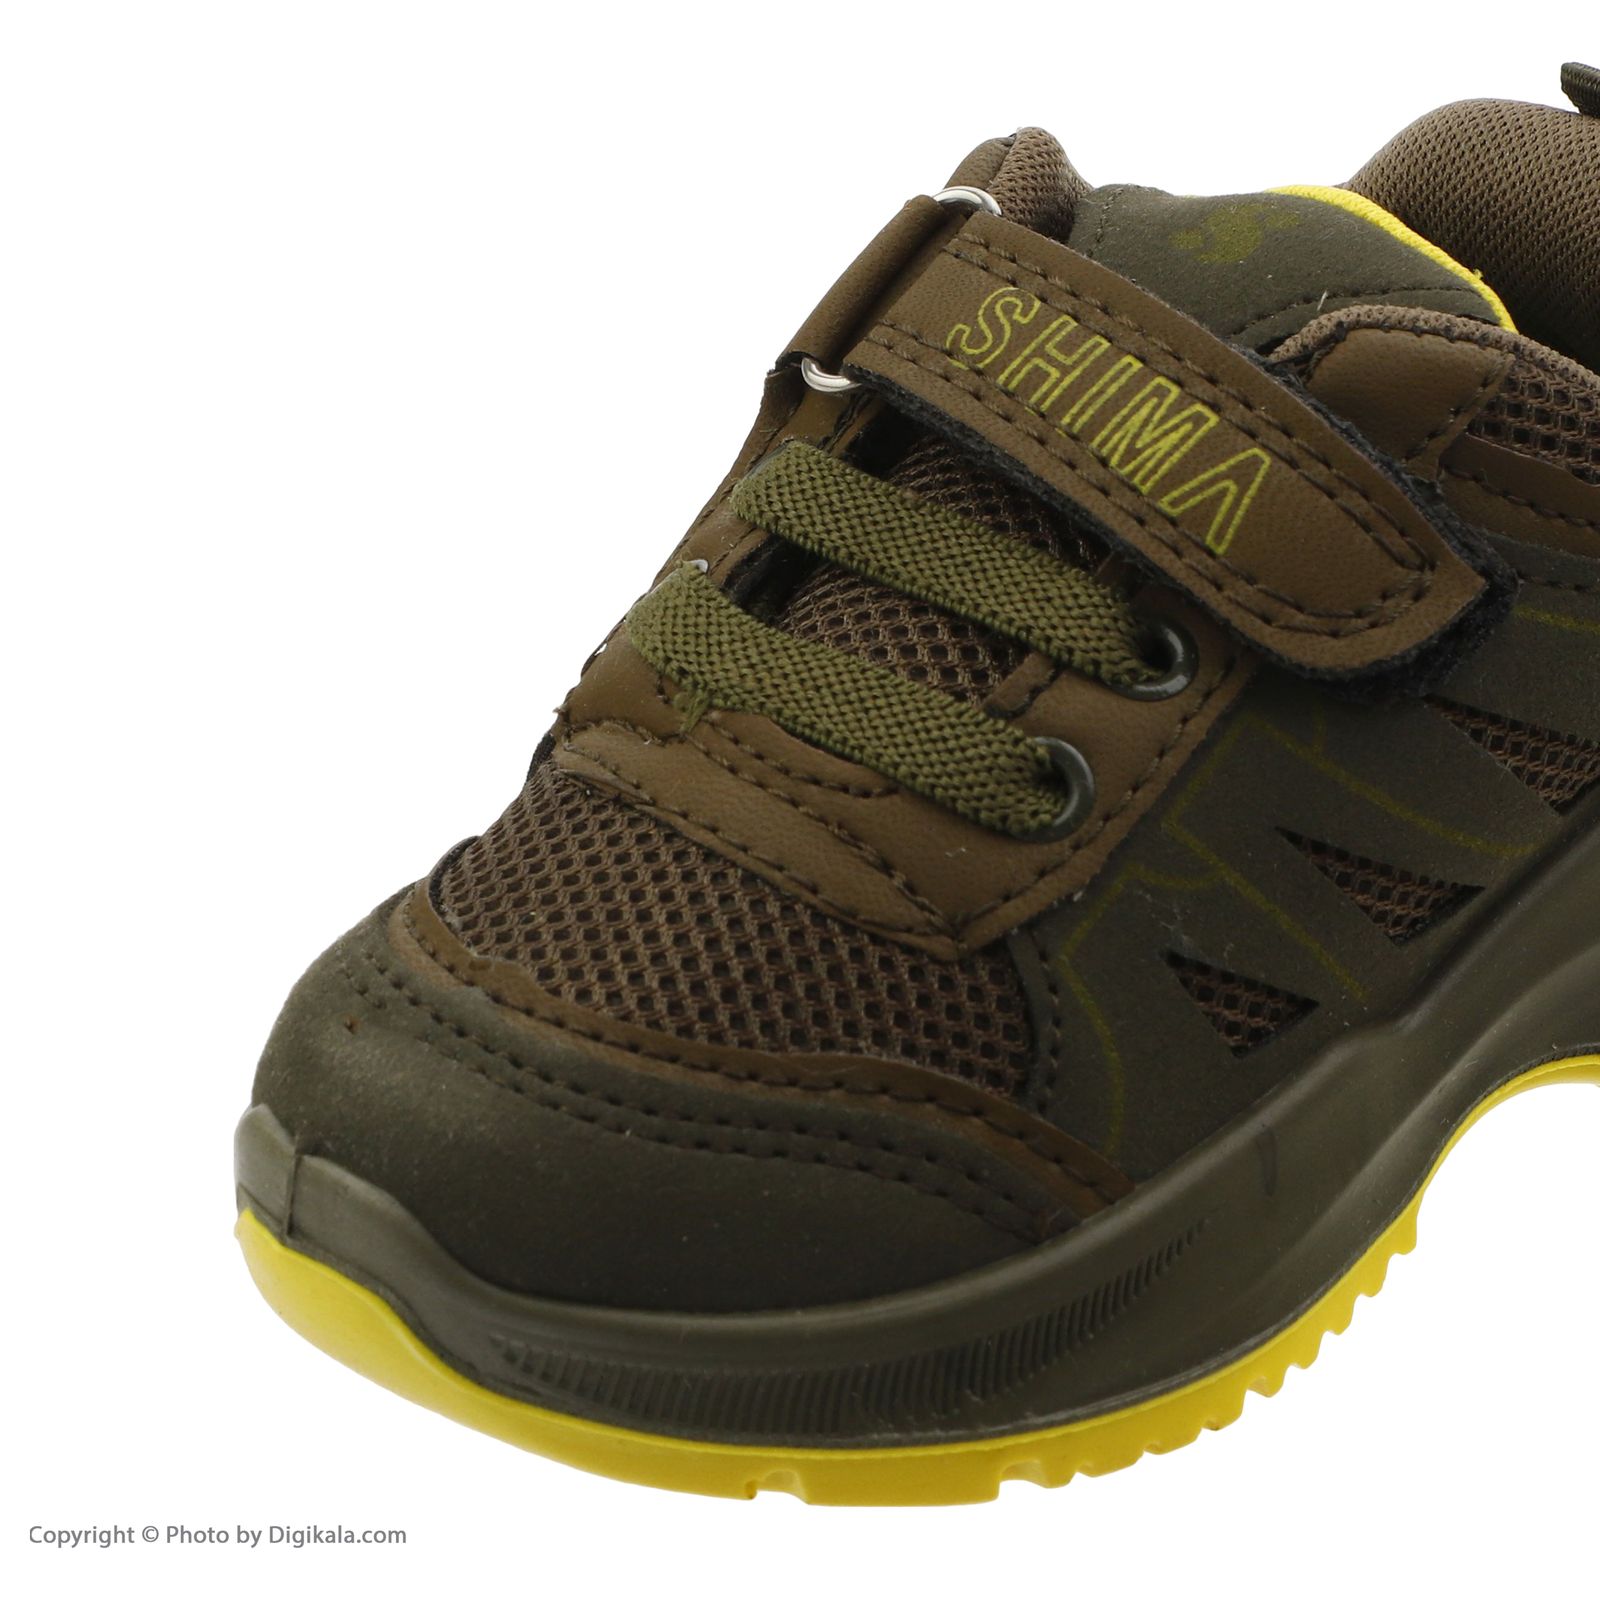  کفش مخصوص پیاده روی بچگانه شیما مدل 32662-36 -  - 4